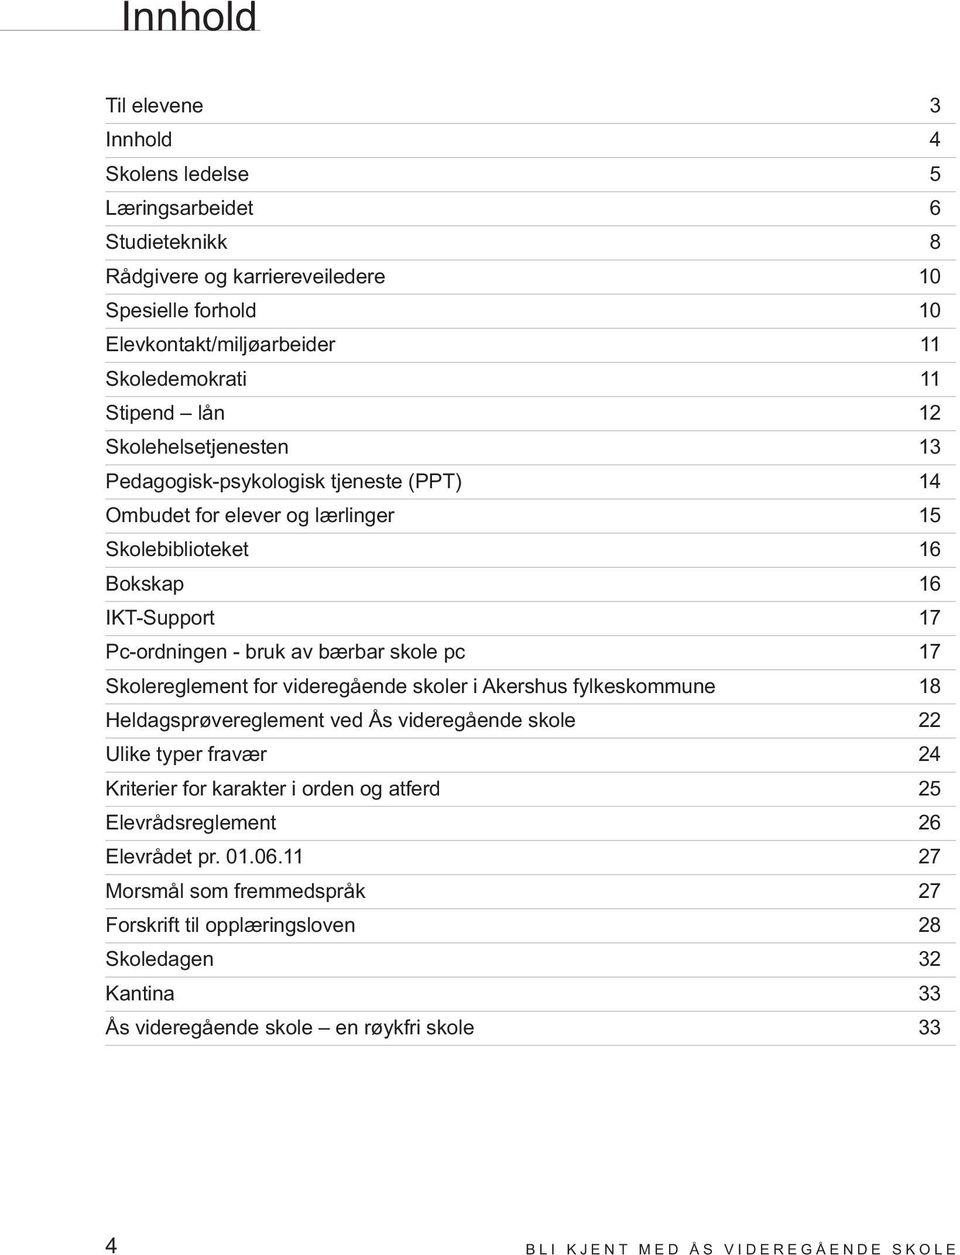 Skolereglement for videregående skoler i Akershus fylkeskommune 18 Heldagsprøvereglement ved Ås videregående skole 22 Ulike typer fravær 24 Kriterier for karakter i orden og atferd 25